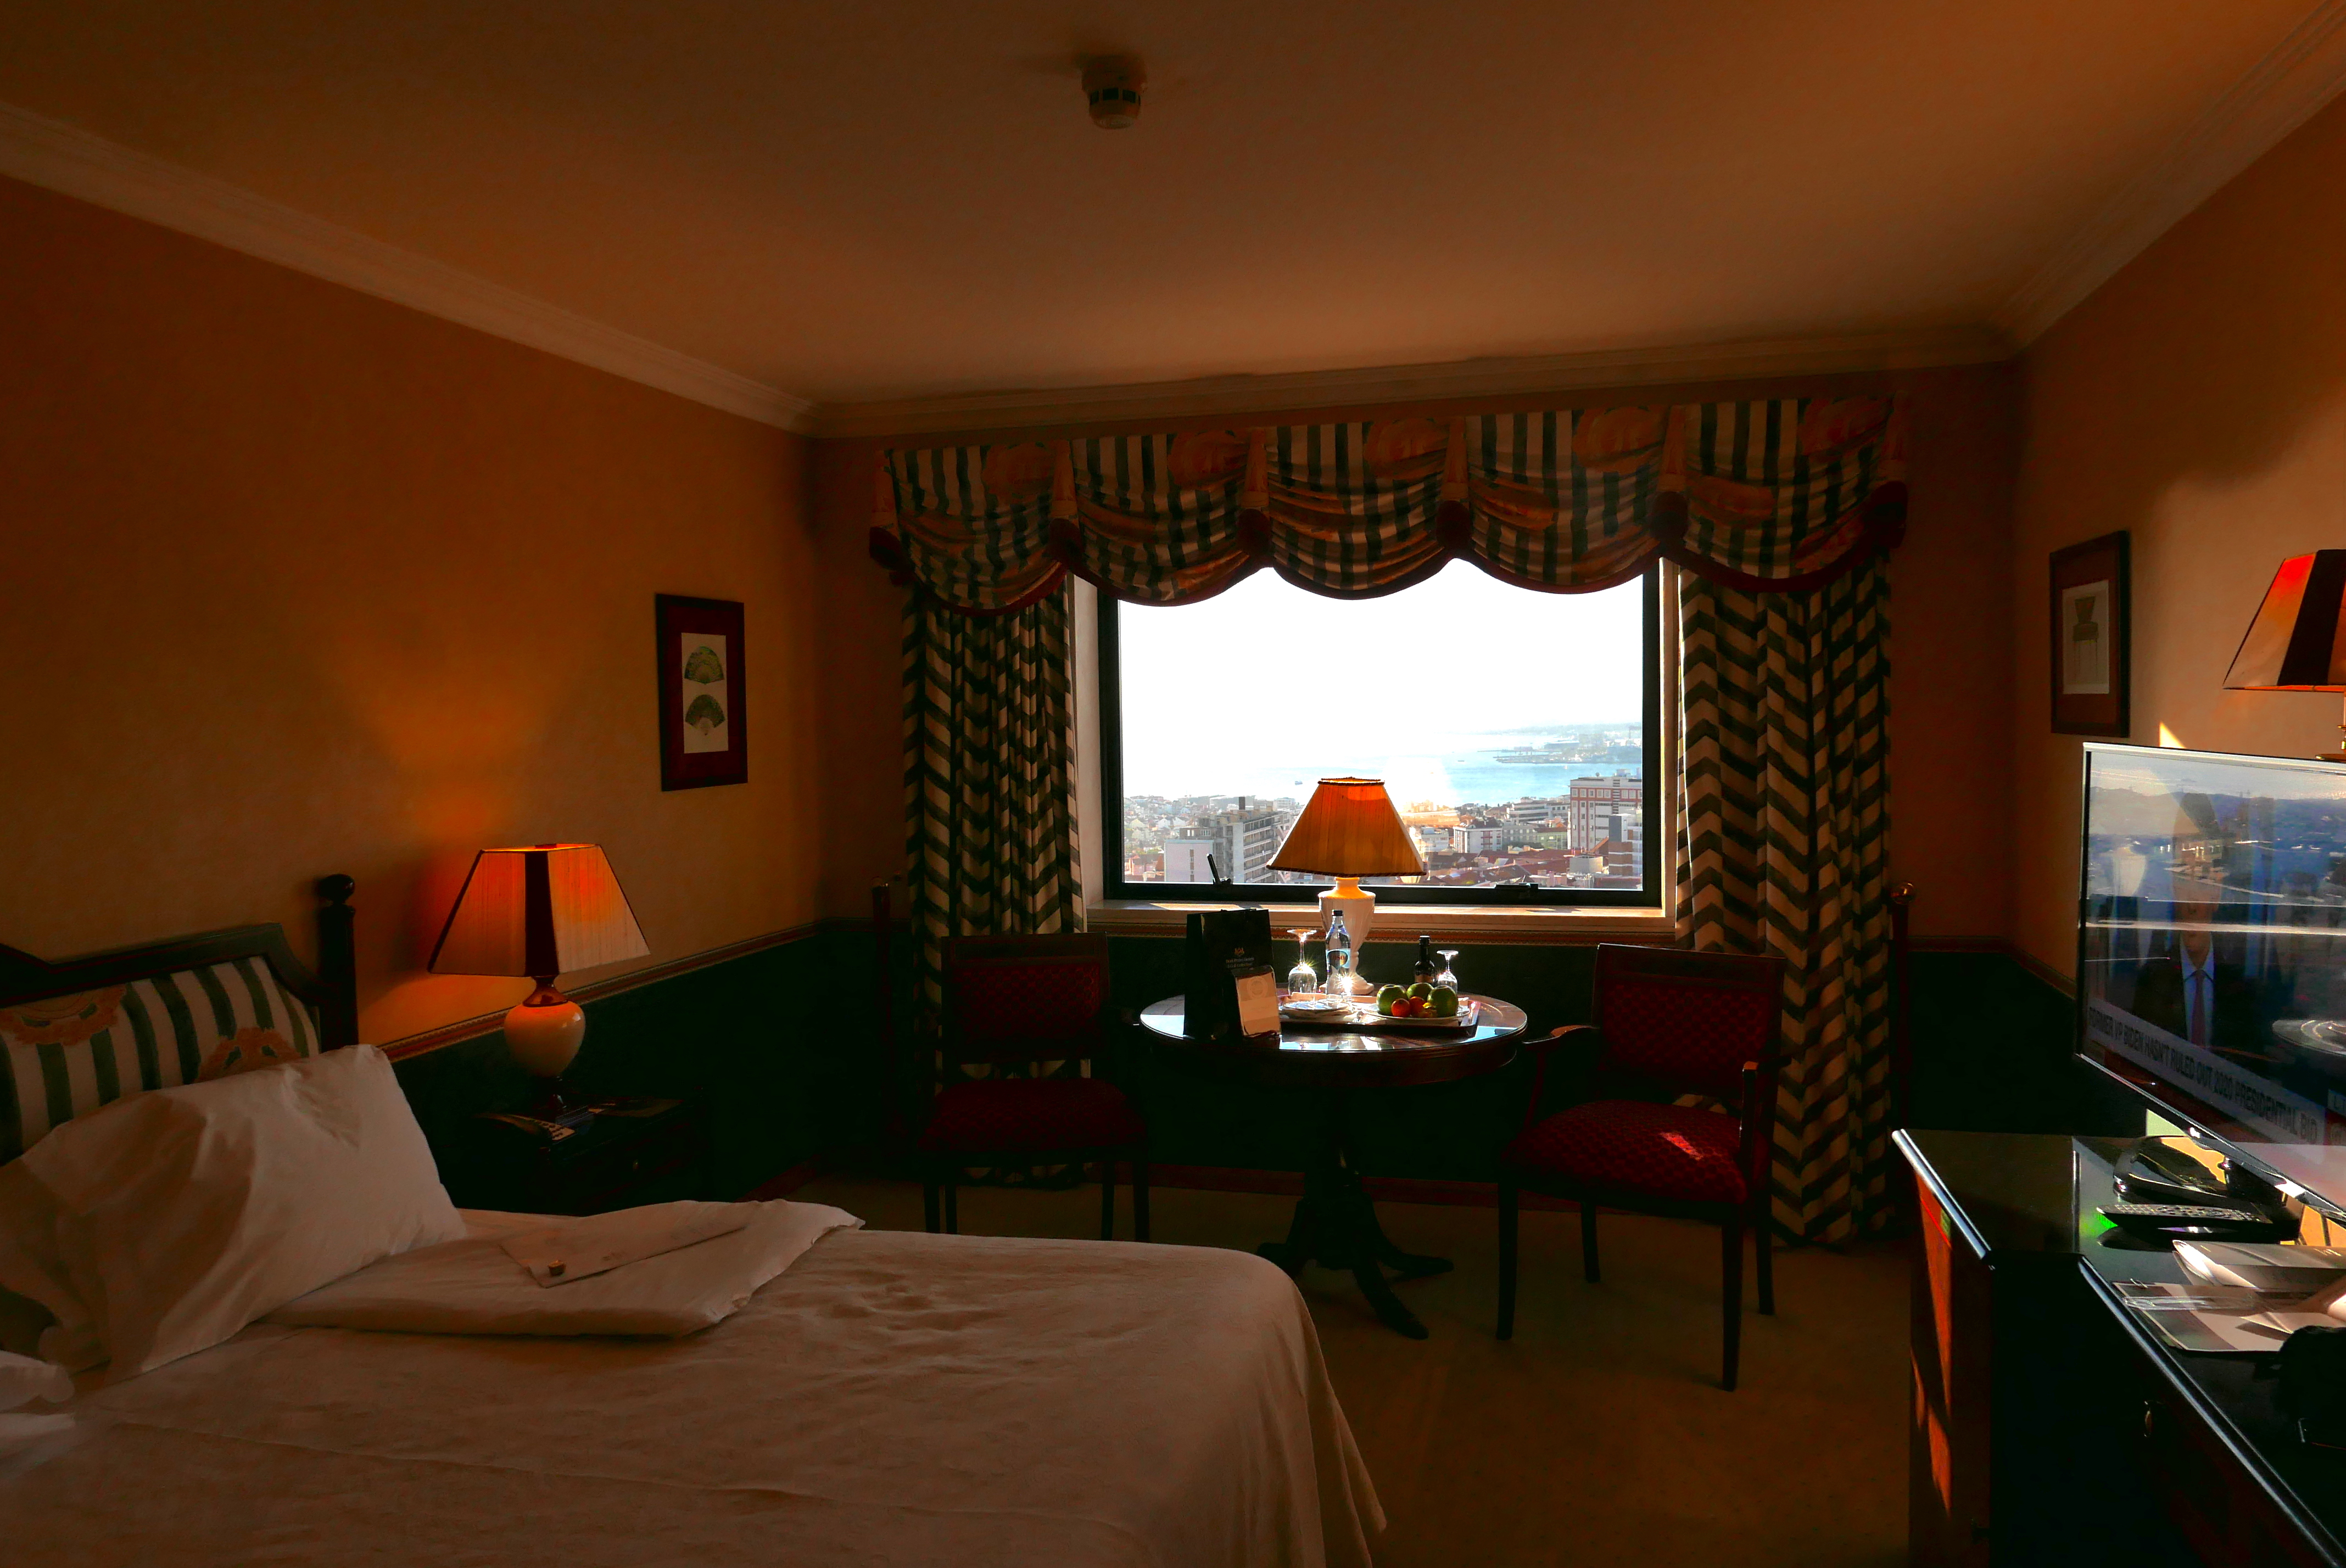 Um dos quartos do hotel D. Pedro, 5 estrelas, um dos mais tradicionais da capital portuguesa